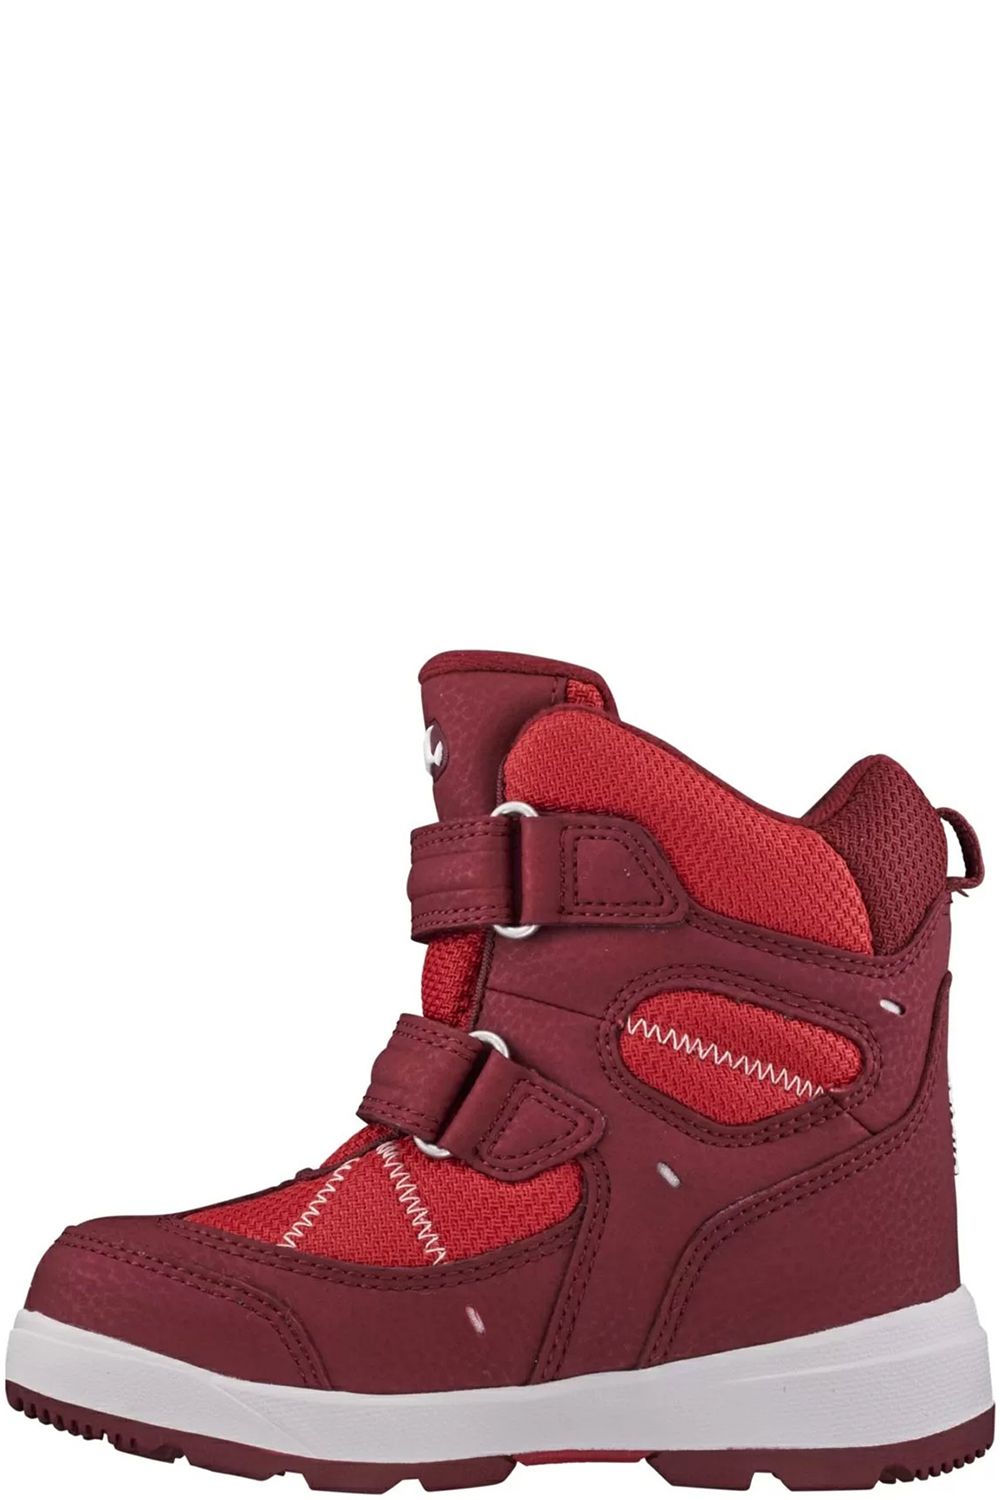 Ботинки Viking, размер 25, цвет красный 3-87060-5210 - фото 3